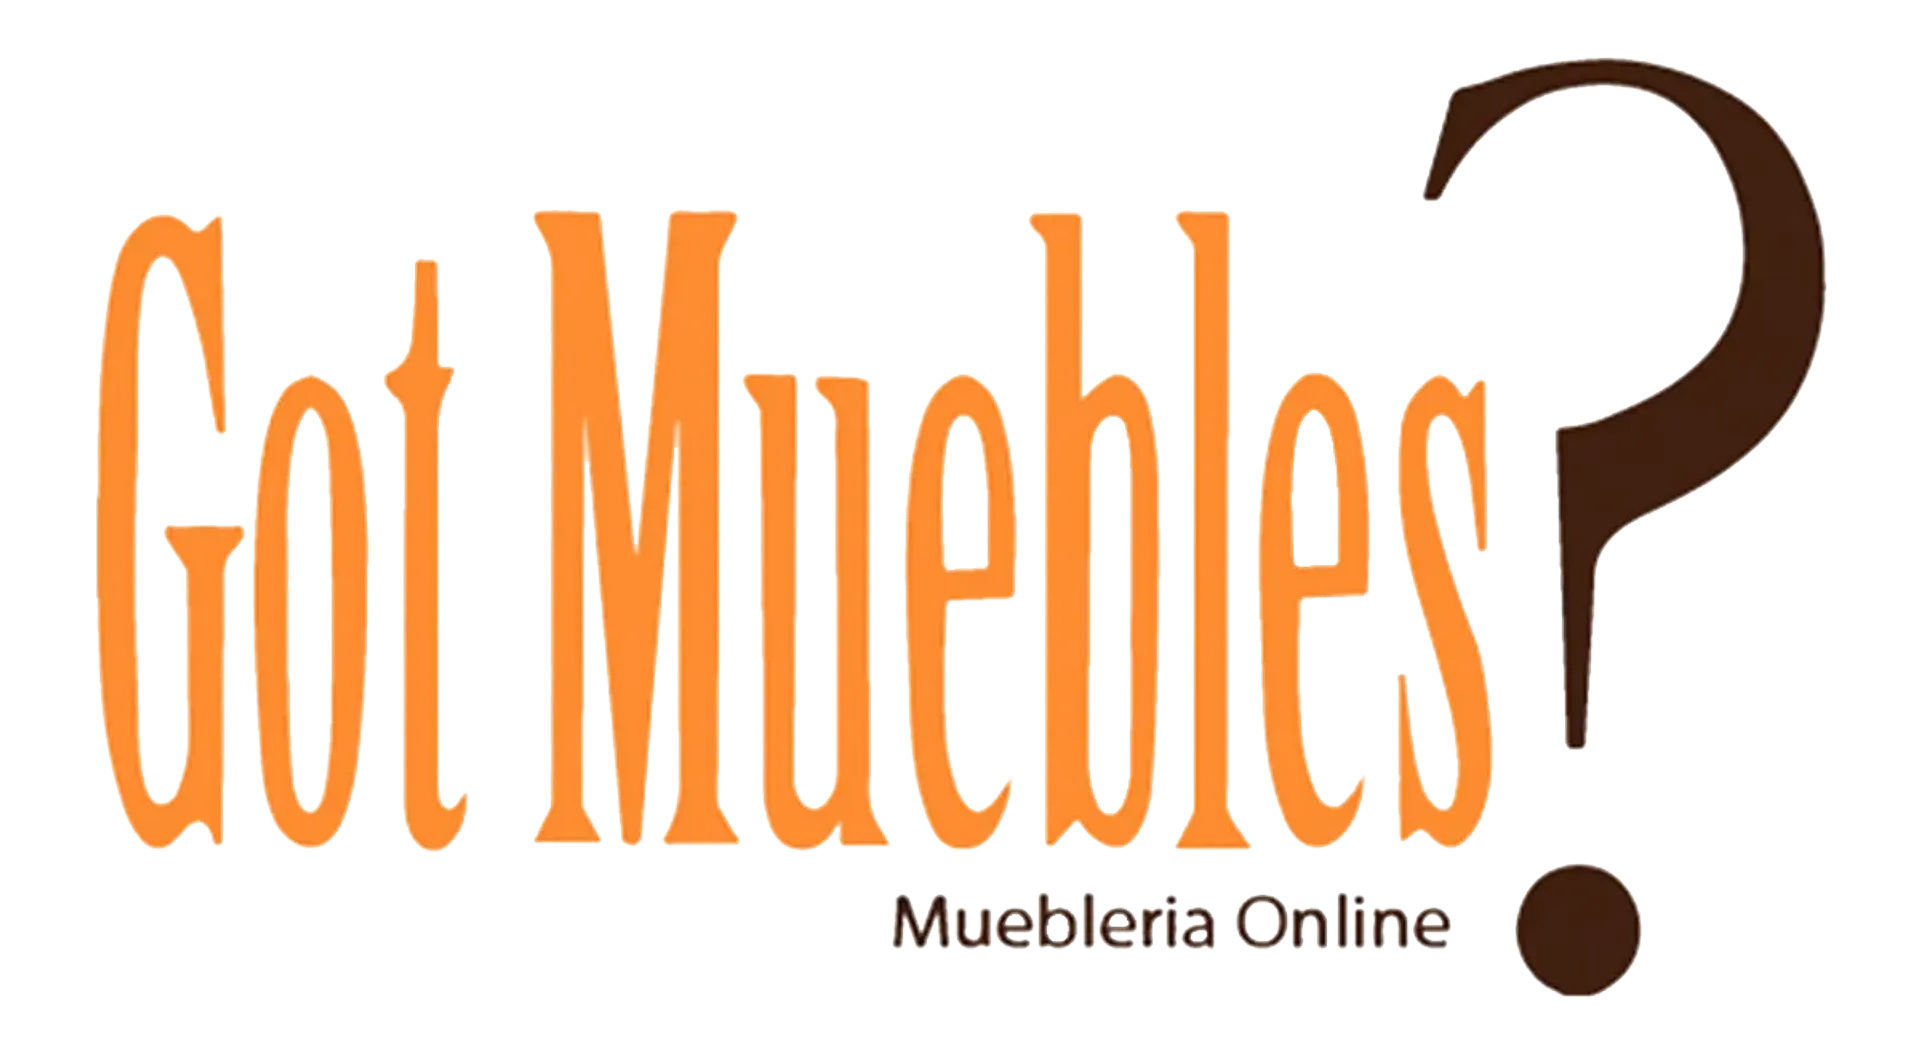 GOT MUEBLES logo